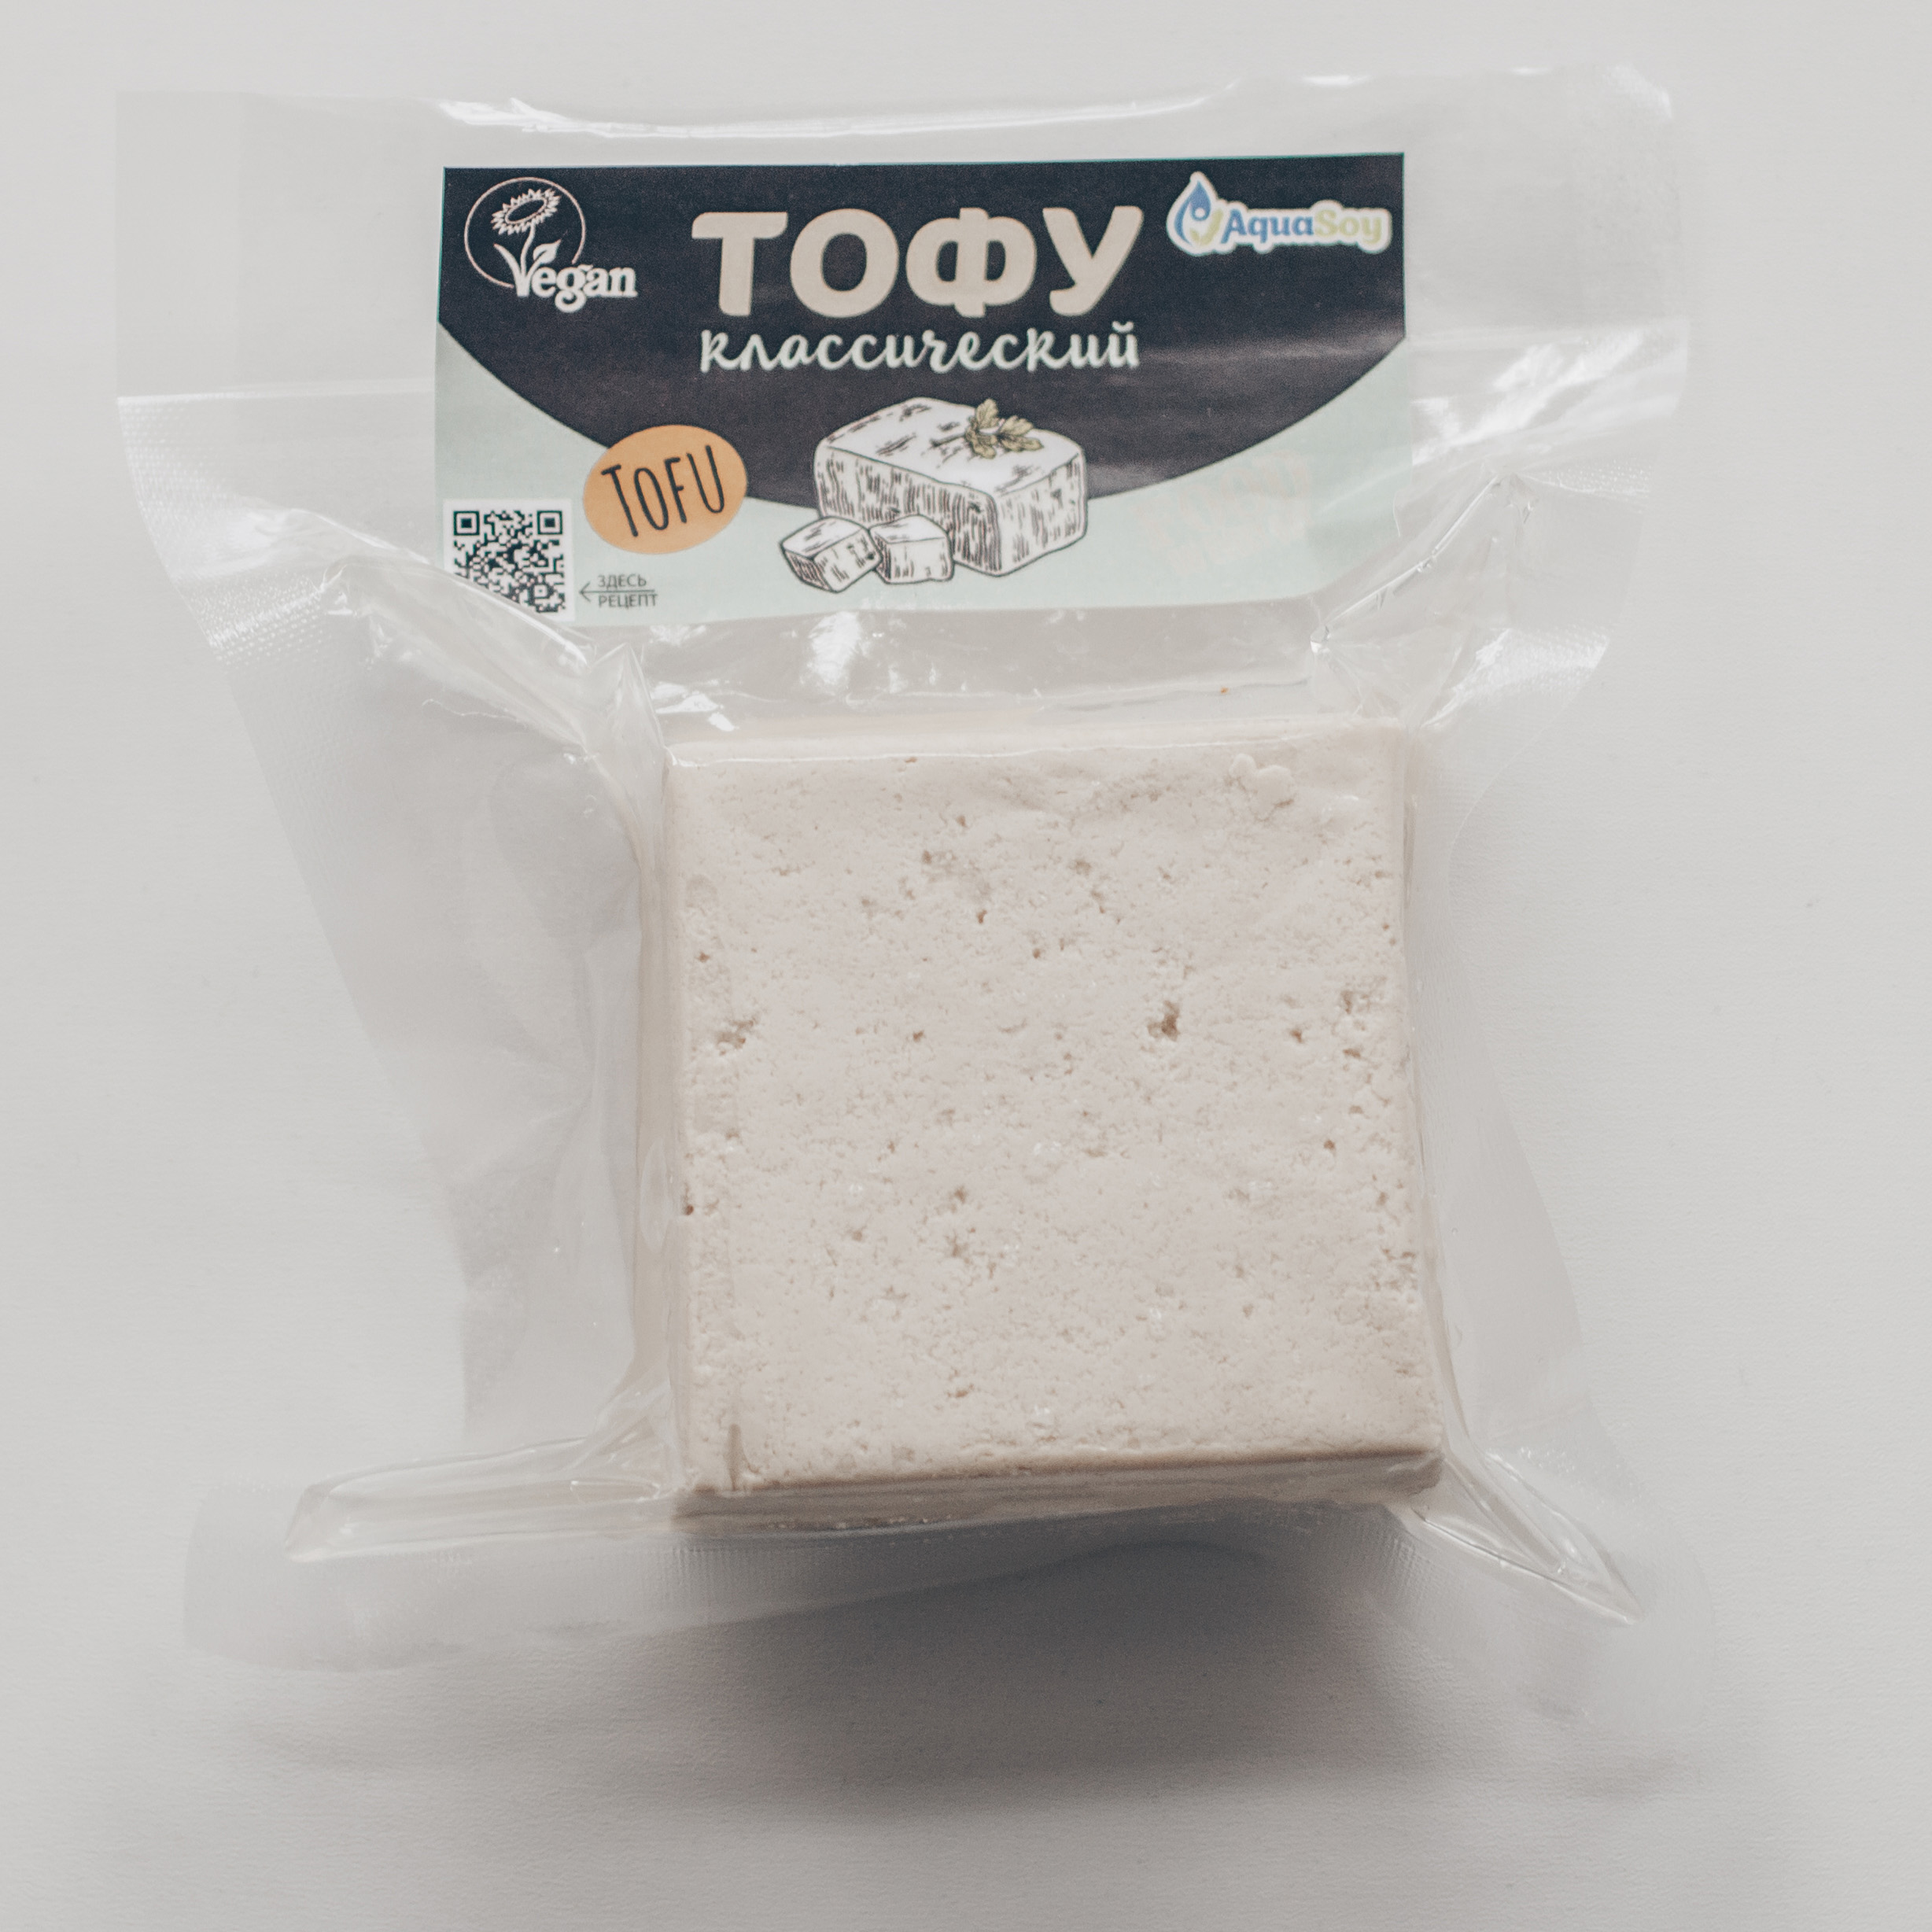 Классический сыр Тофу AquaSoy